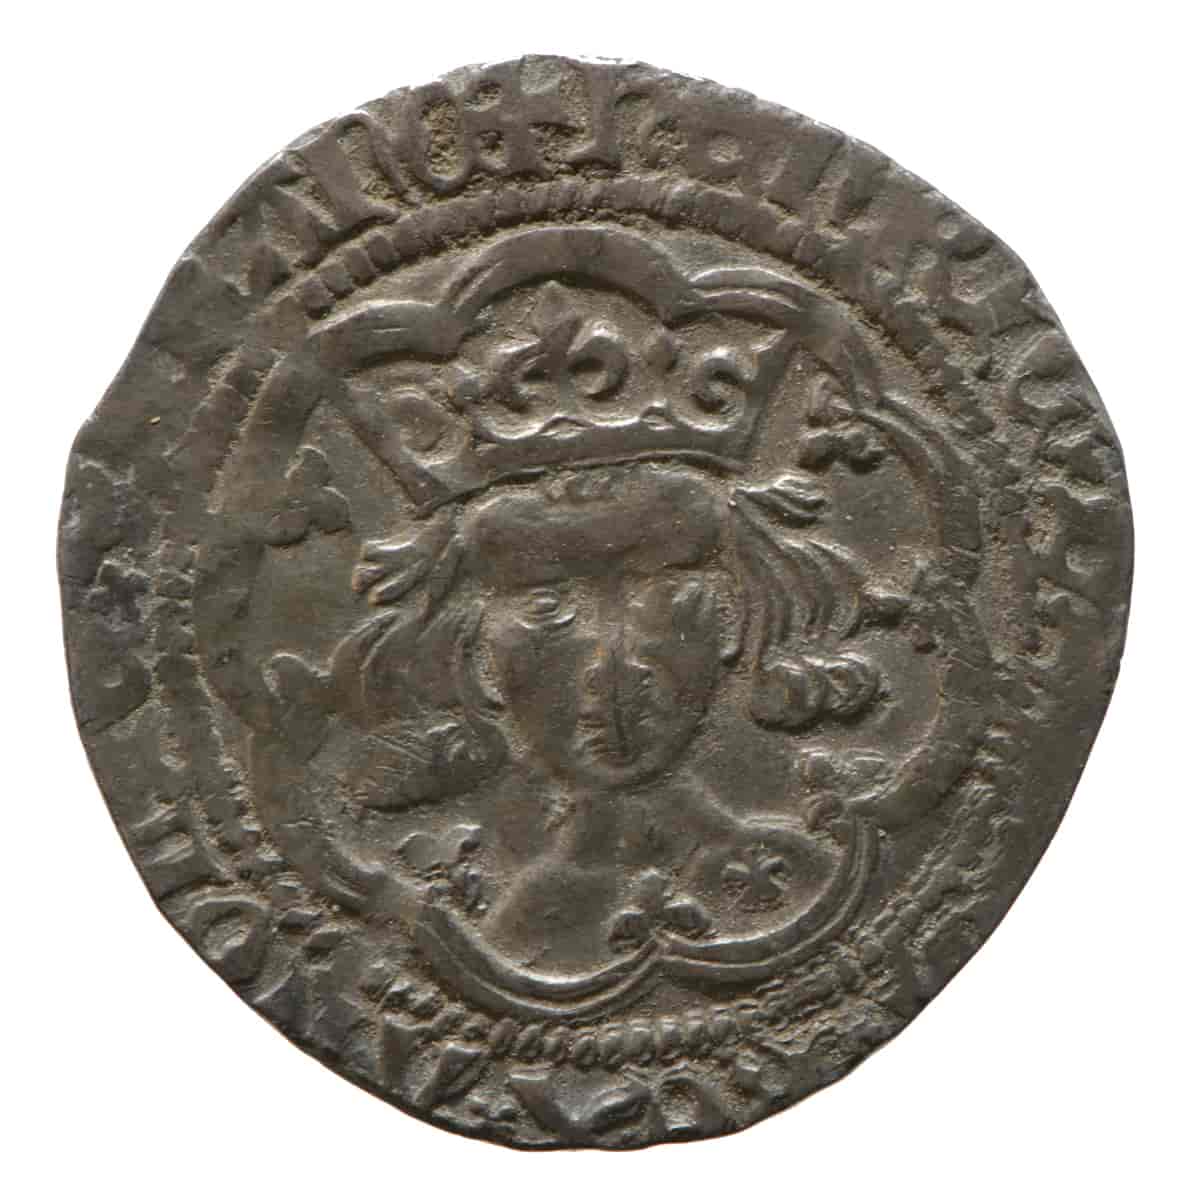 Sølvmynt fra 1413